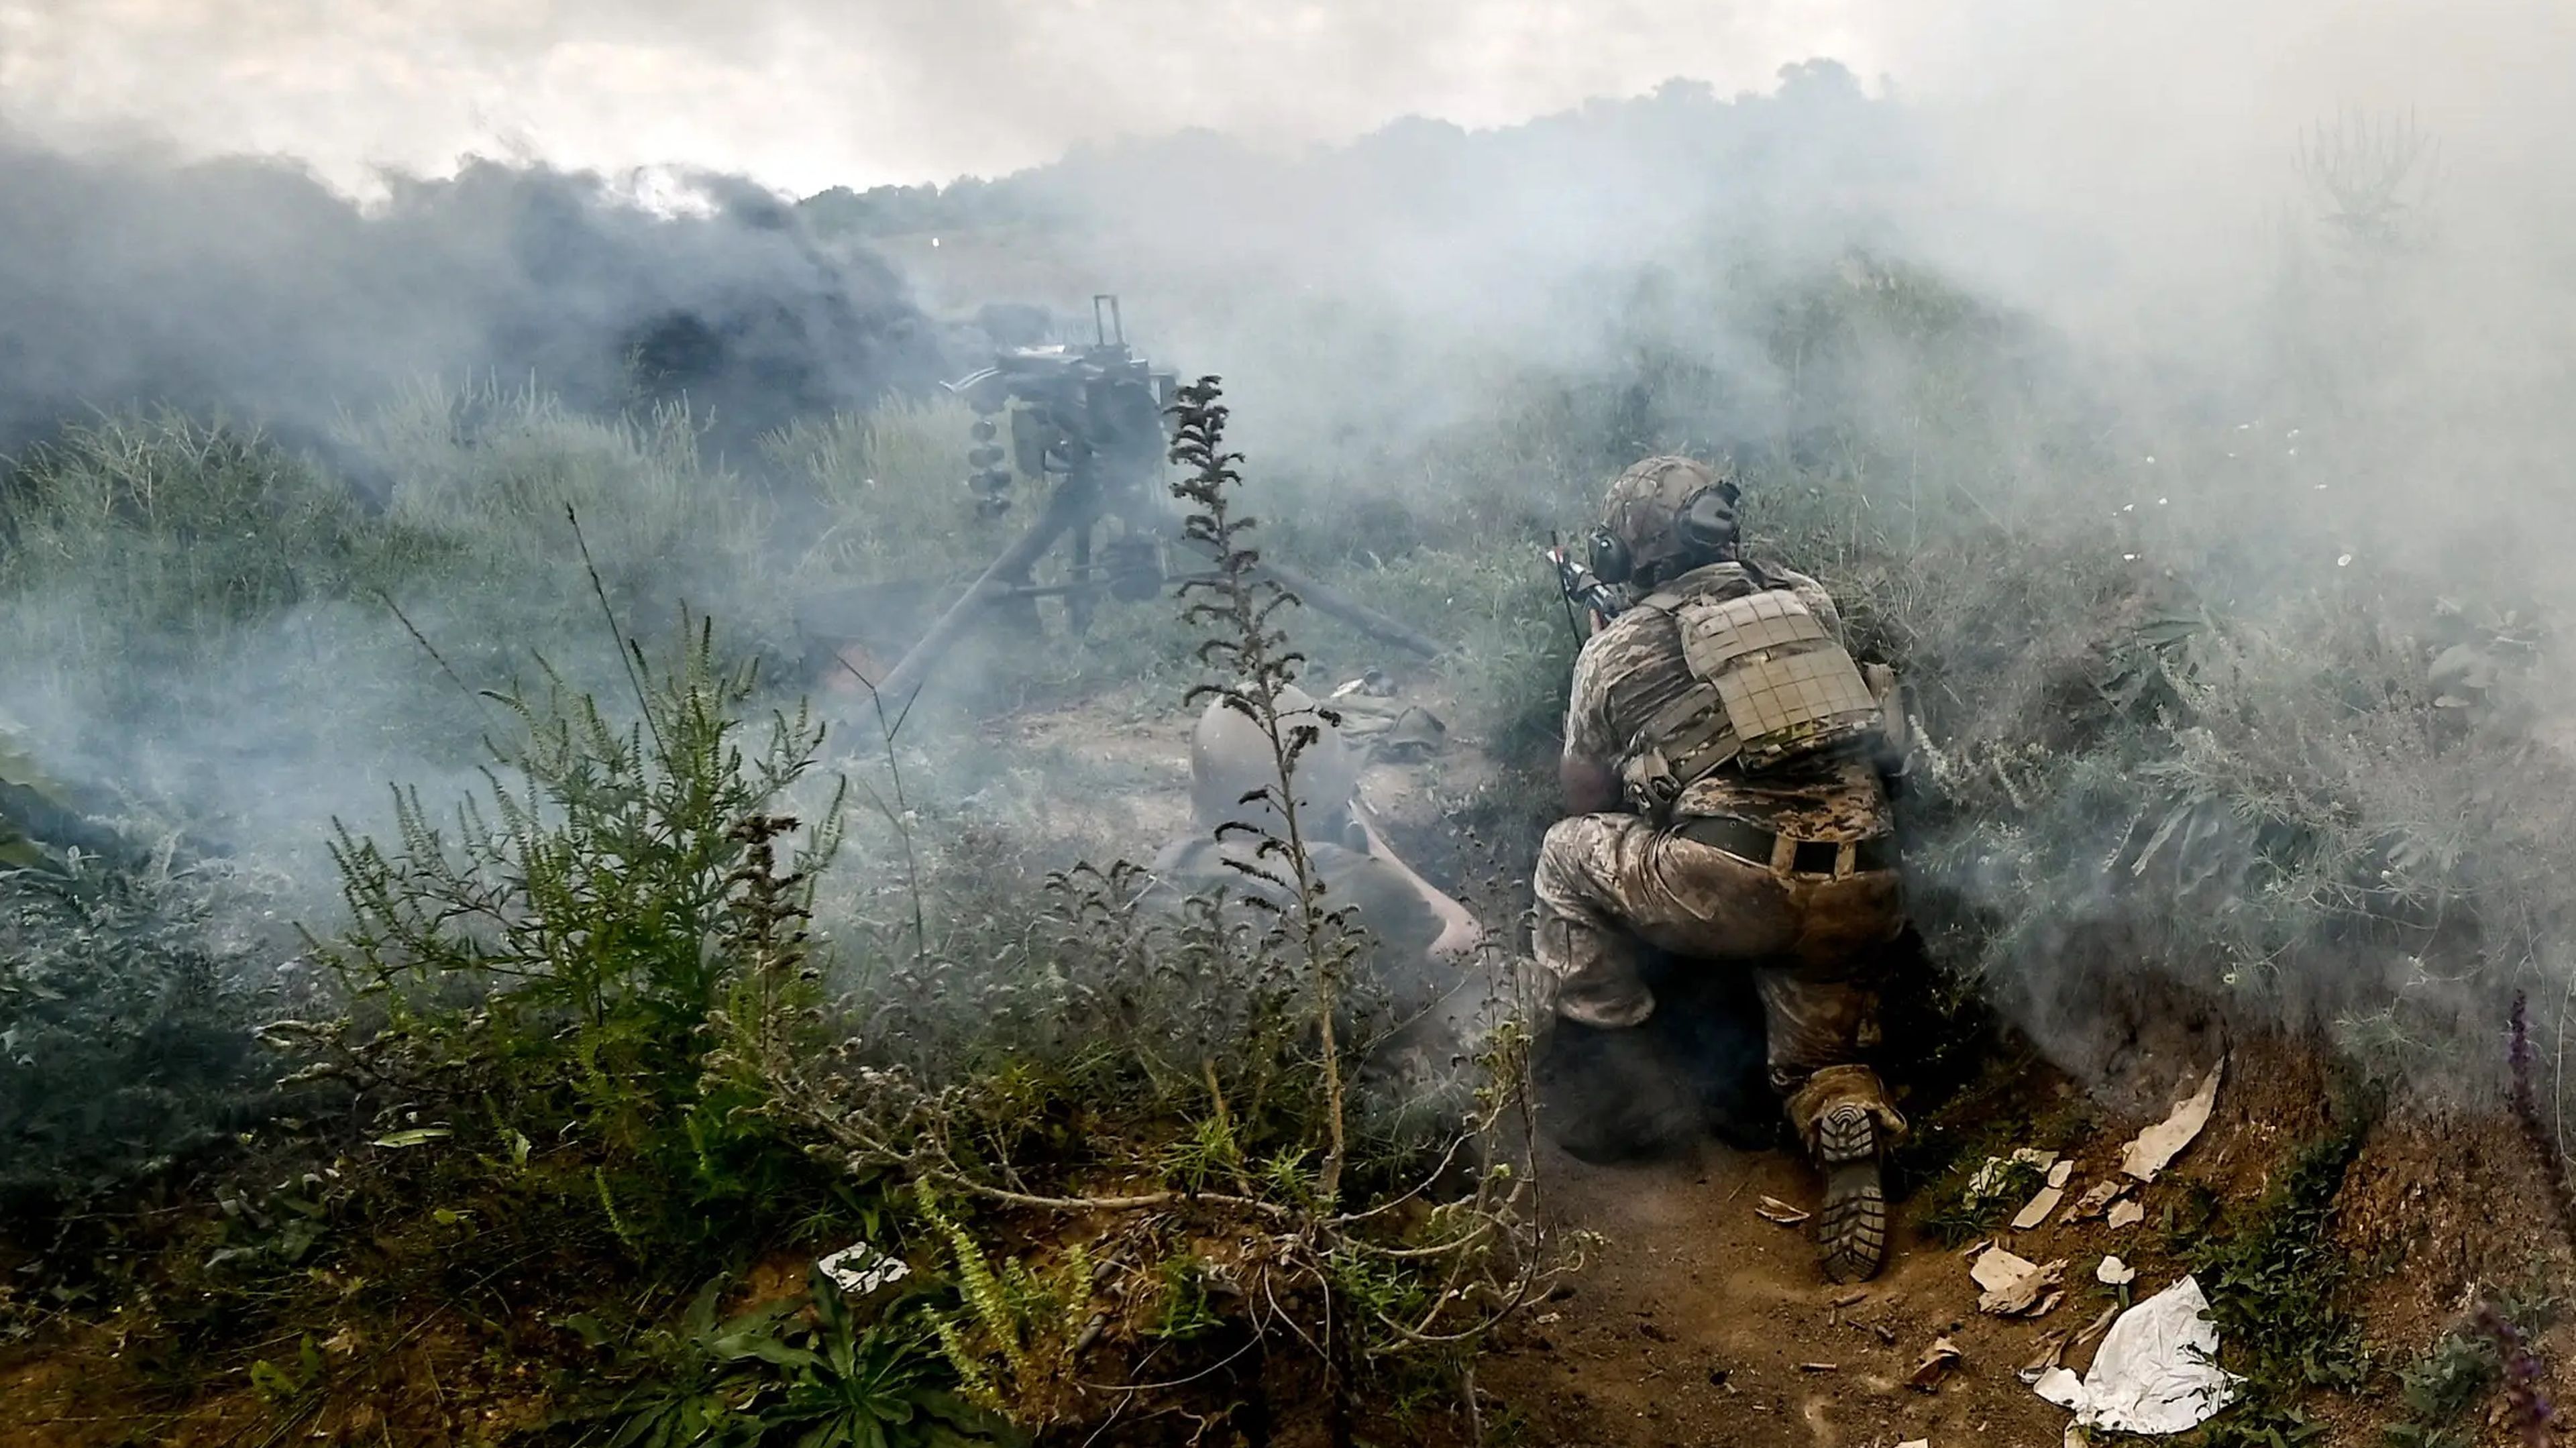 El humo cubre a los militares que practican el asalto a posiciones enemigas durante un simulacro táctico en la dirección de la provincia de Zaporiyia.